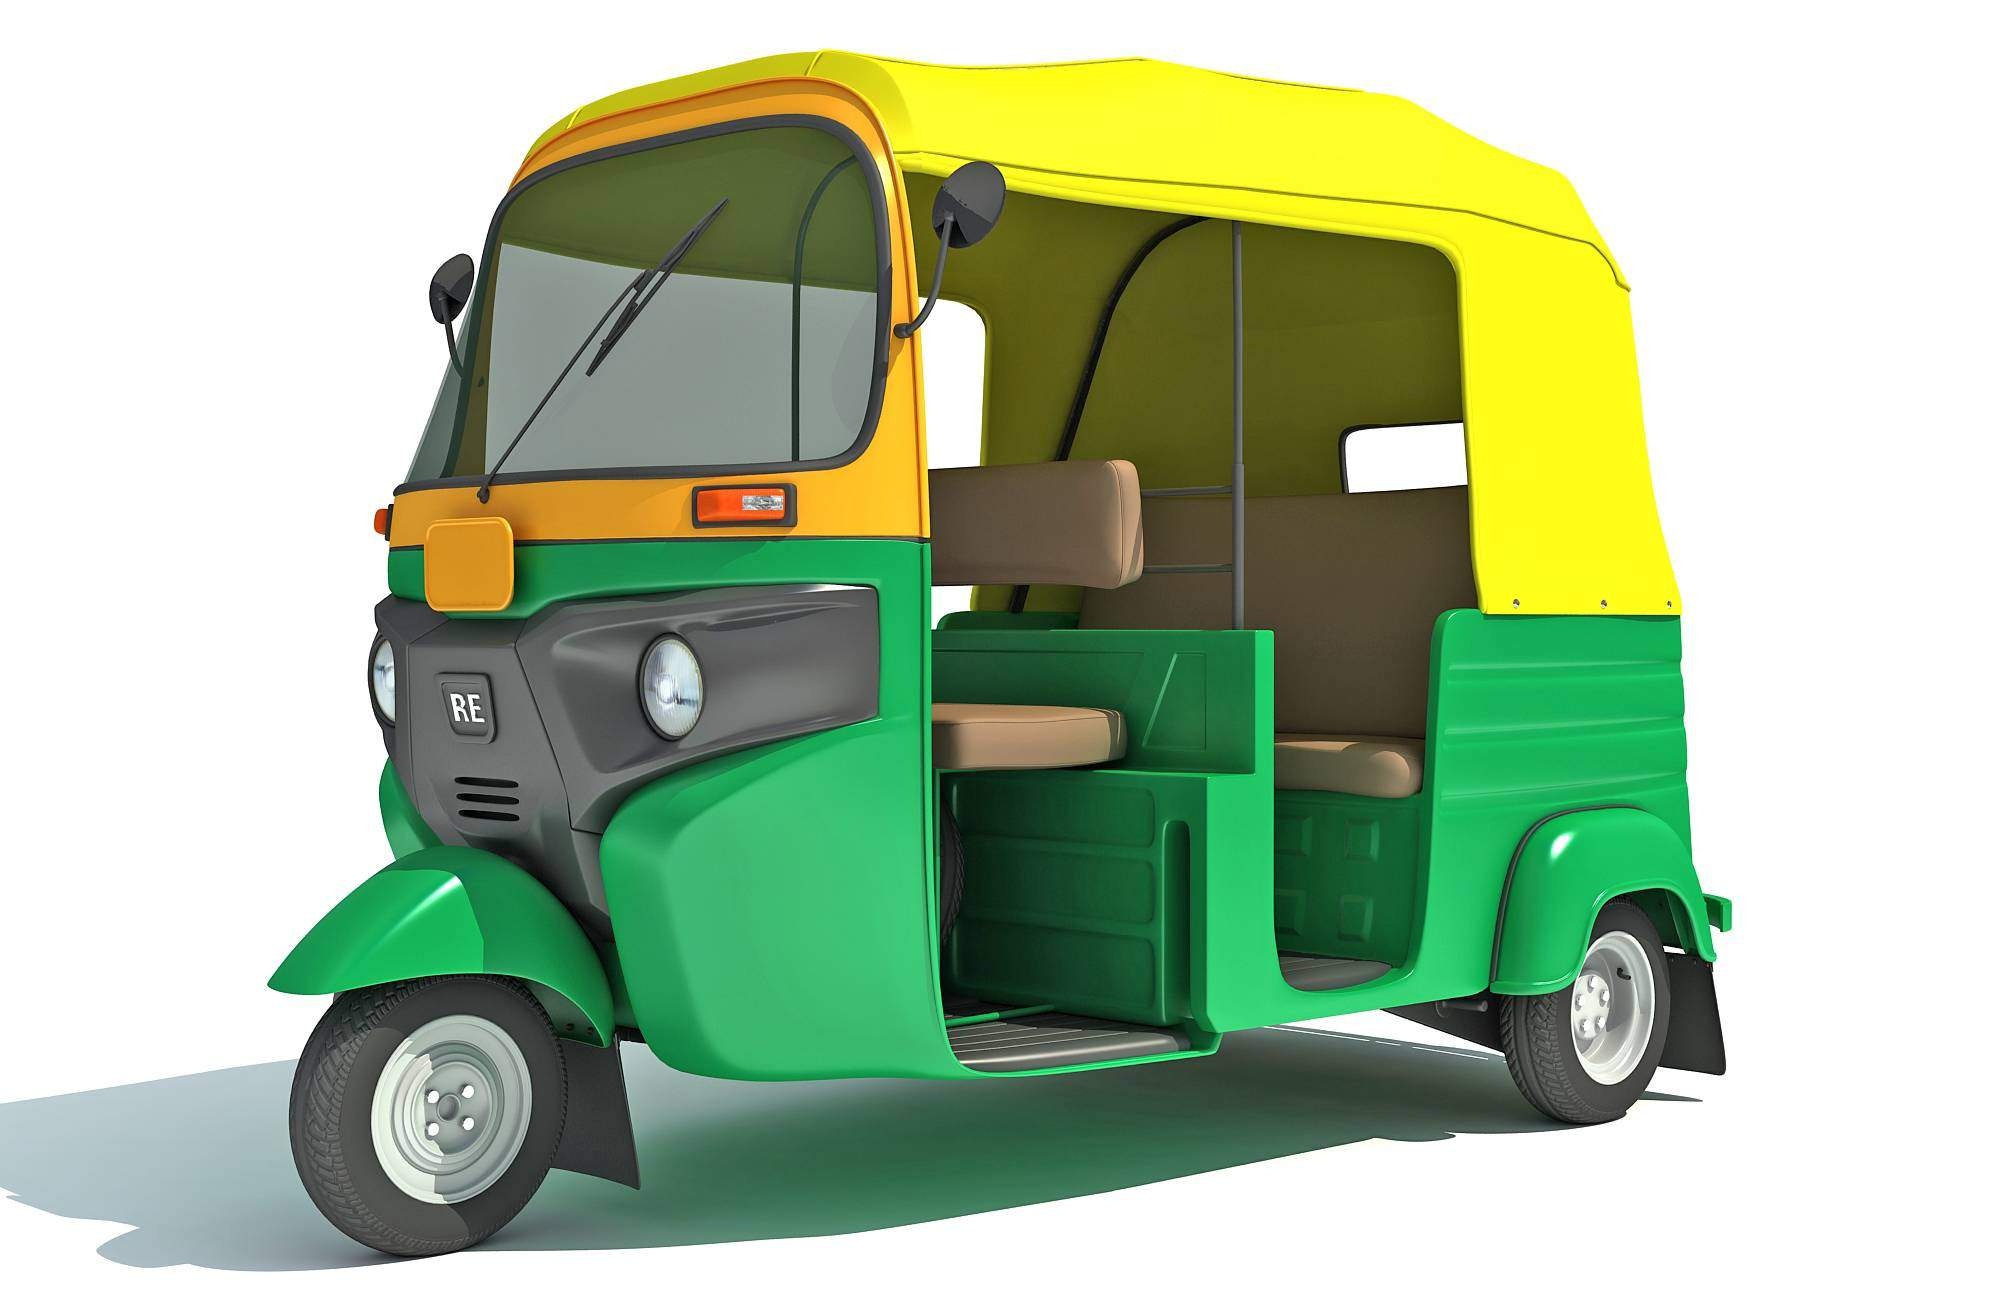 Tuk Tuk Car, Bajaj auto rickshaw, 3D model, Unique transportation, 2000x1300 HD Desktop